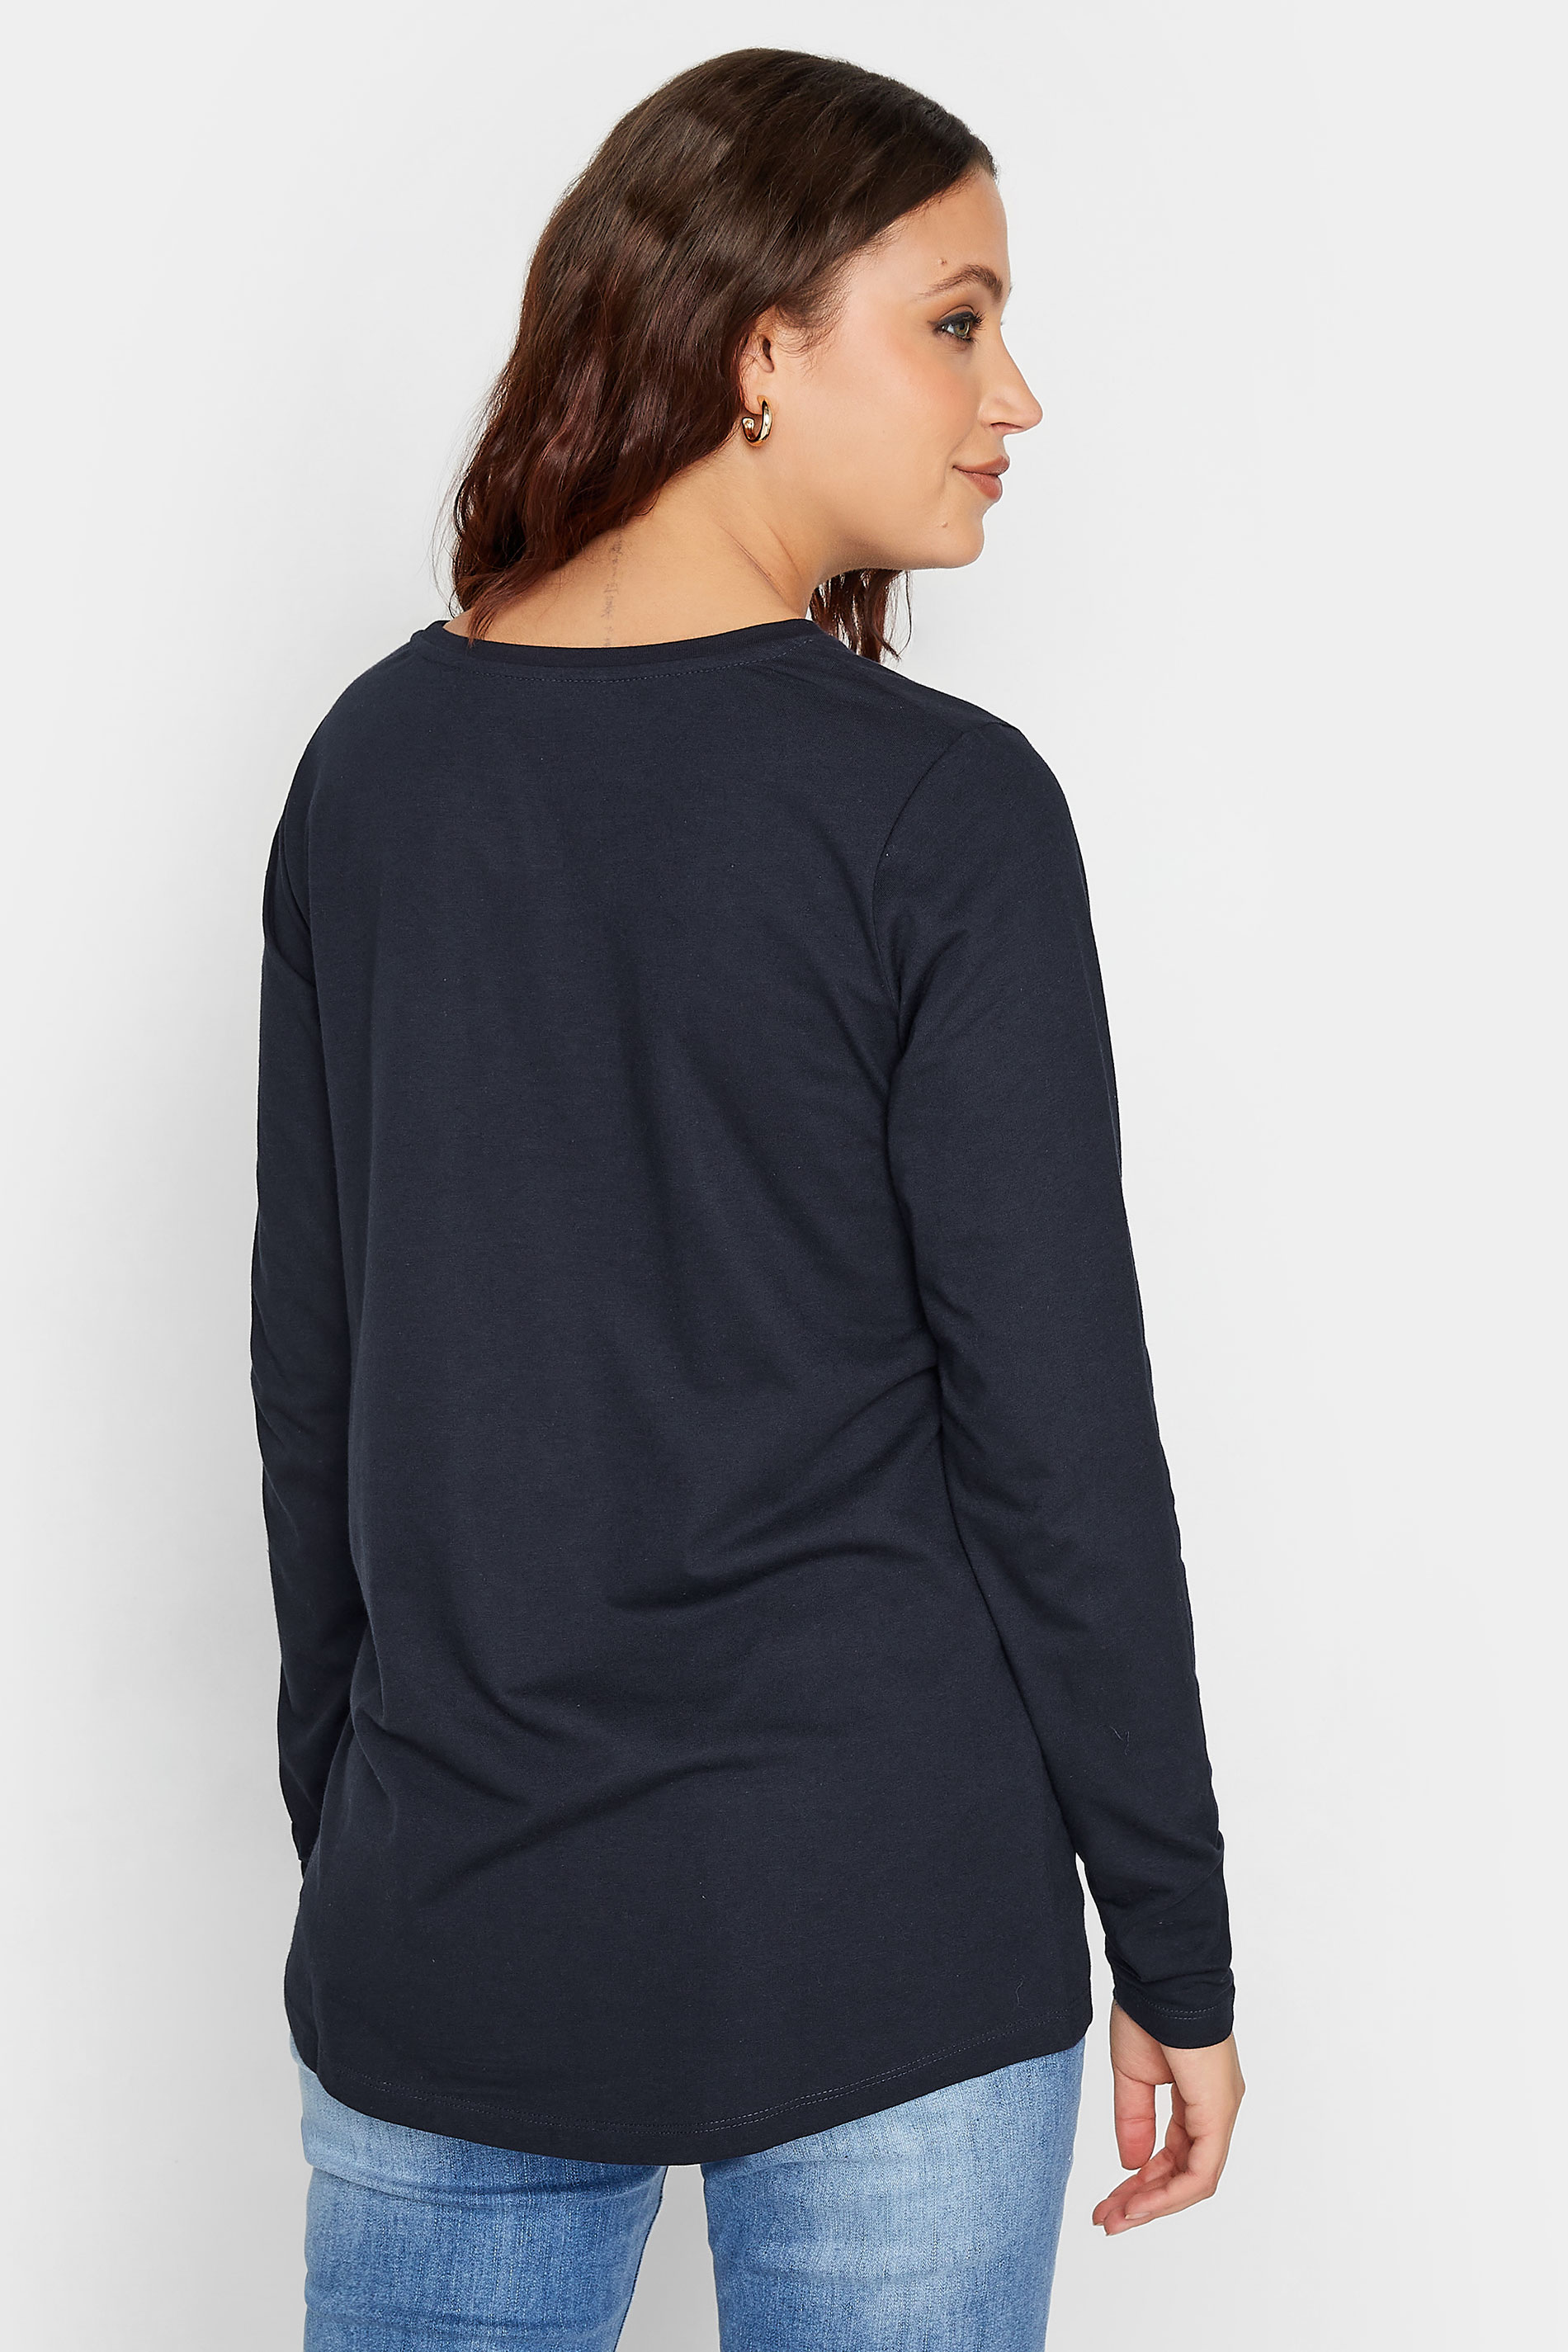 LTS Tall Women's Navy Blue Dipped Hem T-Shirt | Long Tall Sally 3